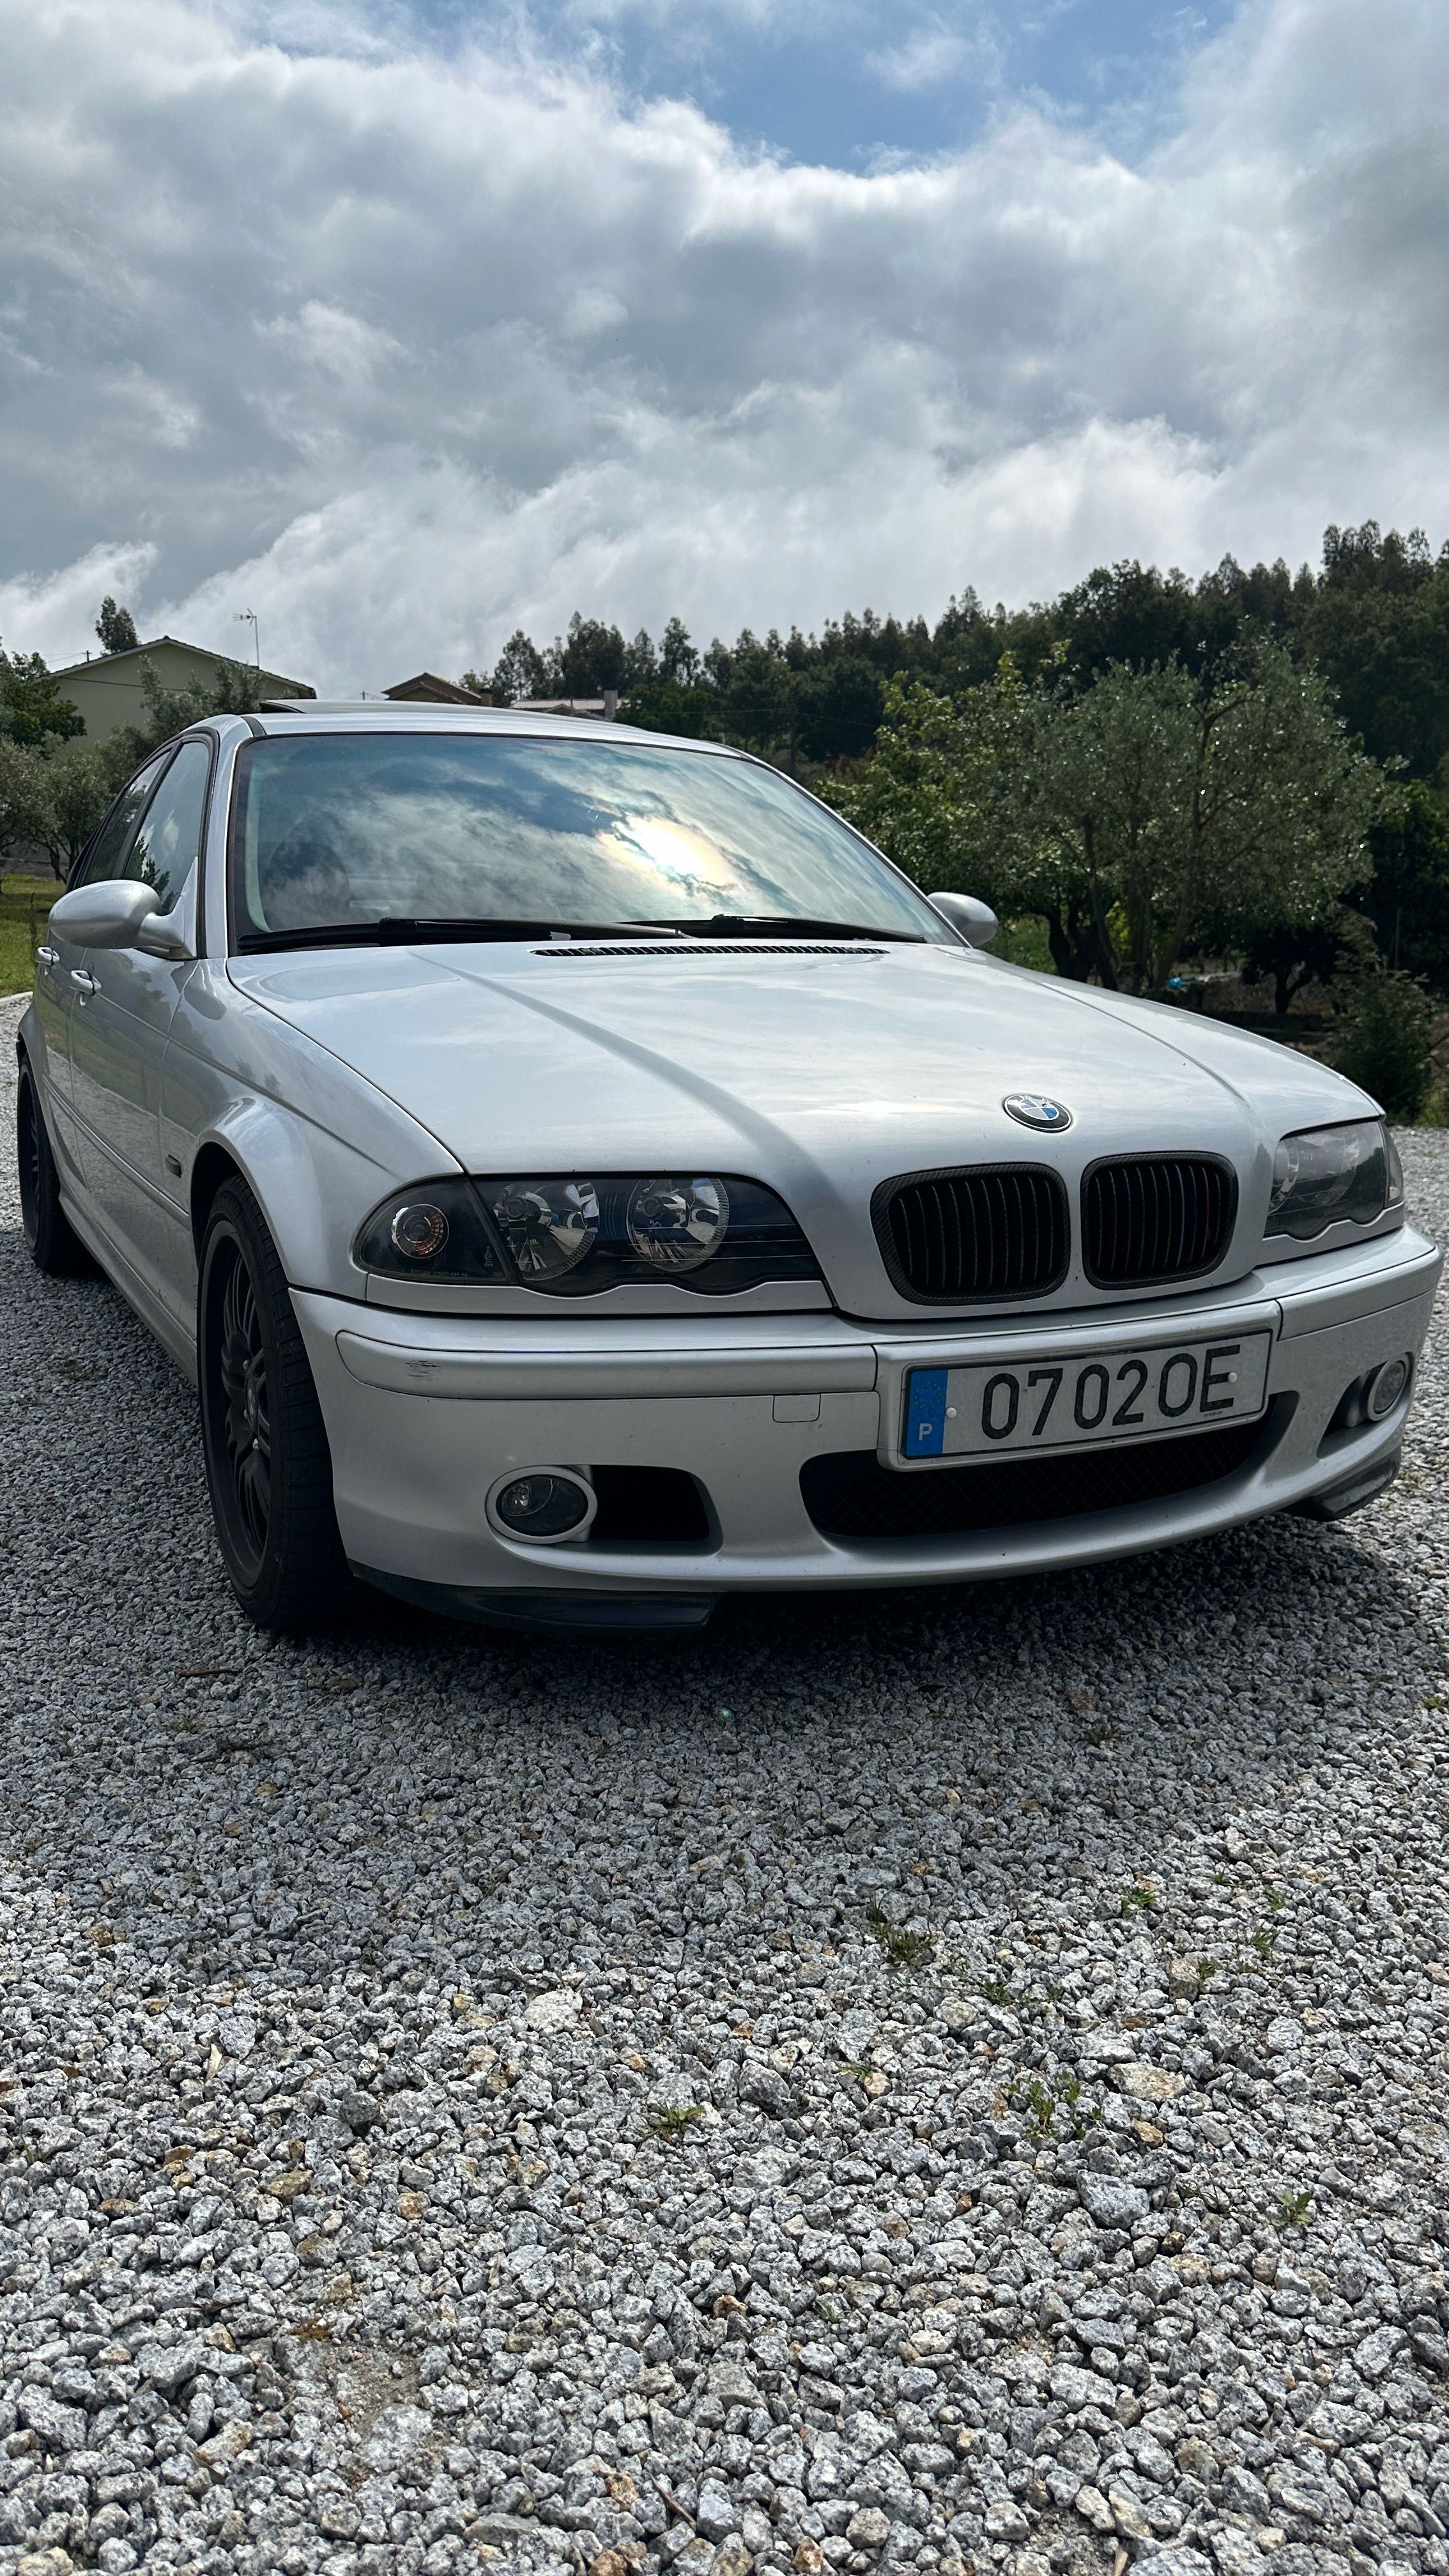 BMW e46 136 cv em muito bom estado